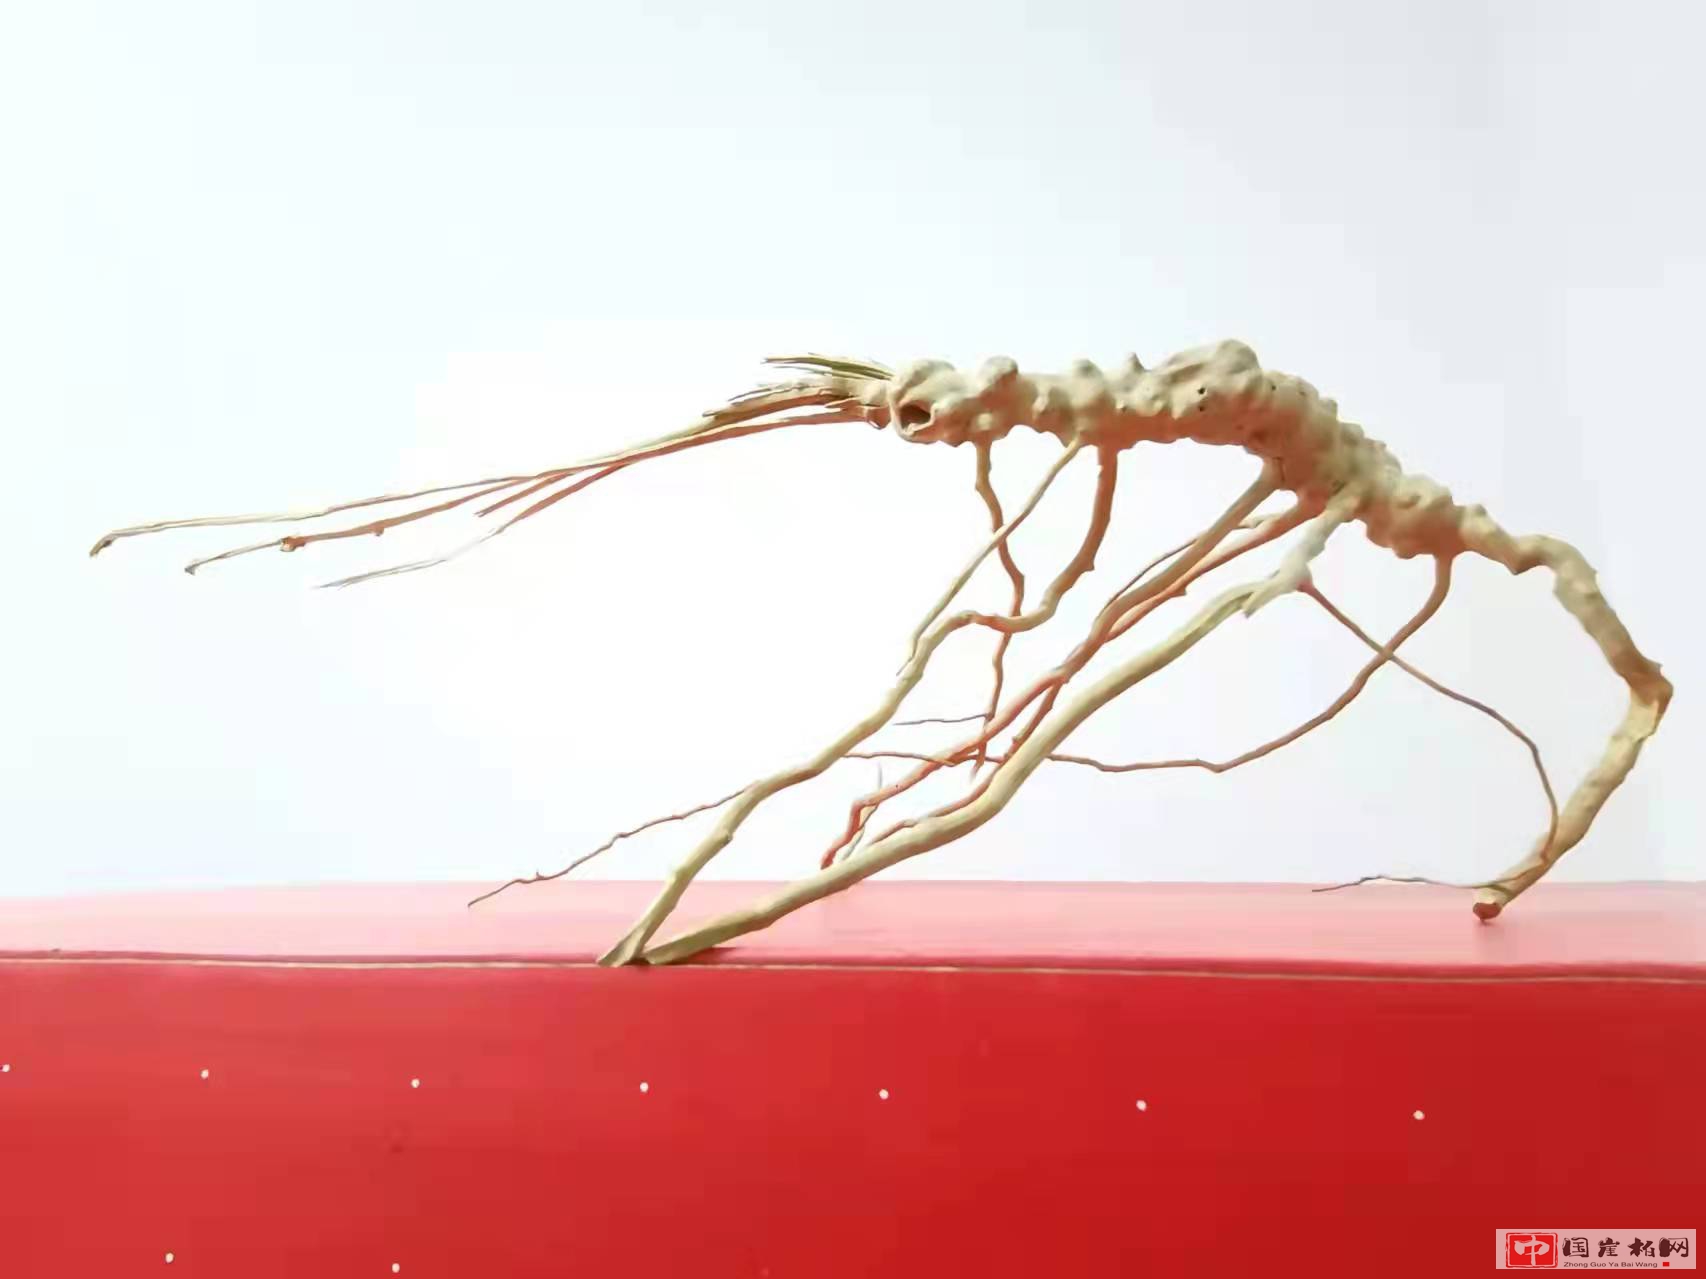 《虾趣图》黄荆根作品  高16厘米  重100克